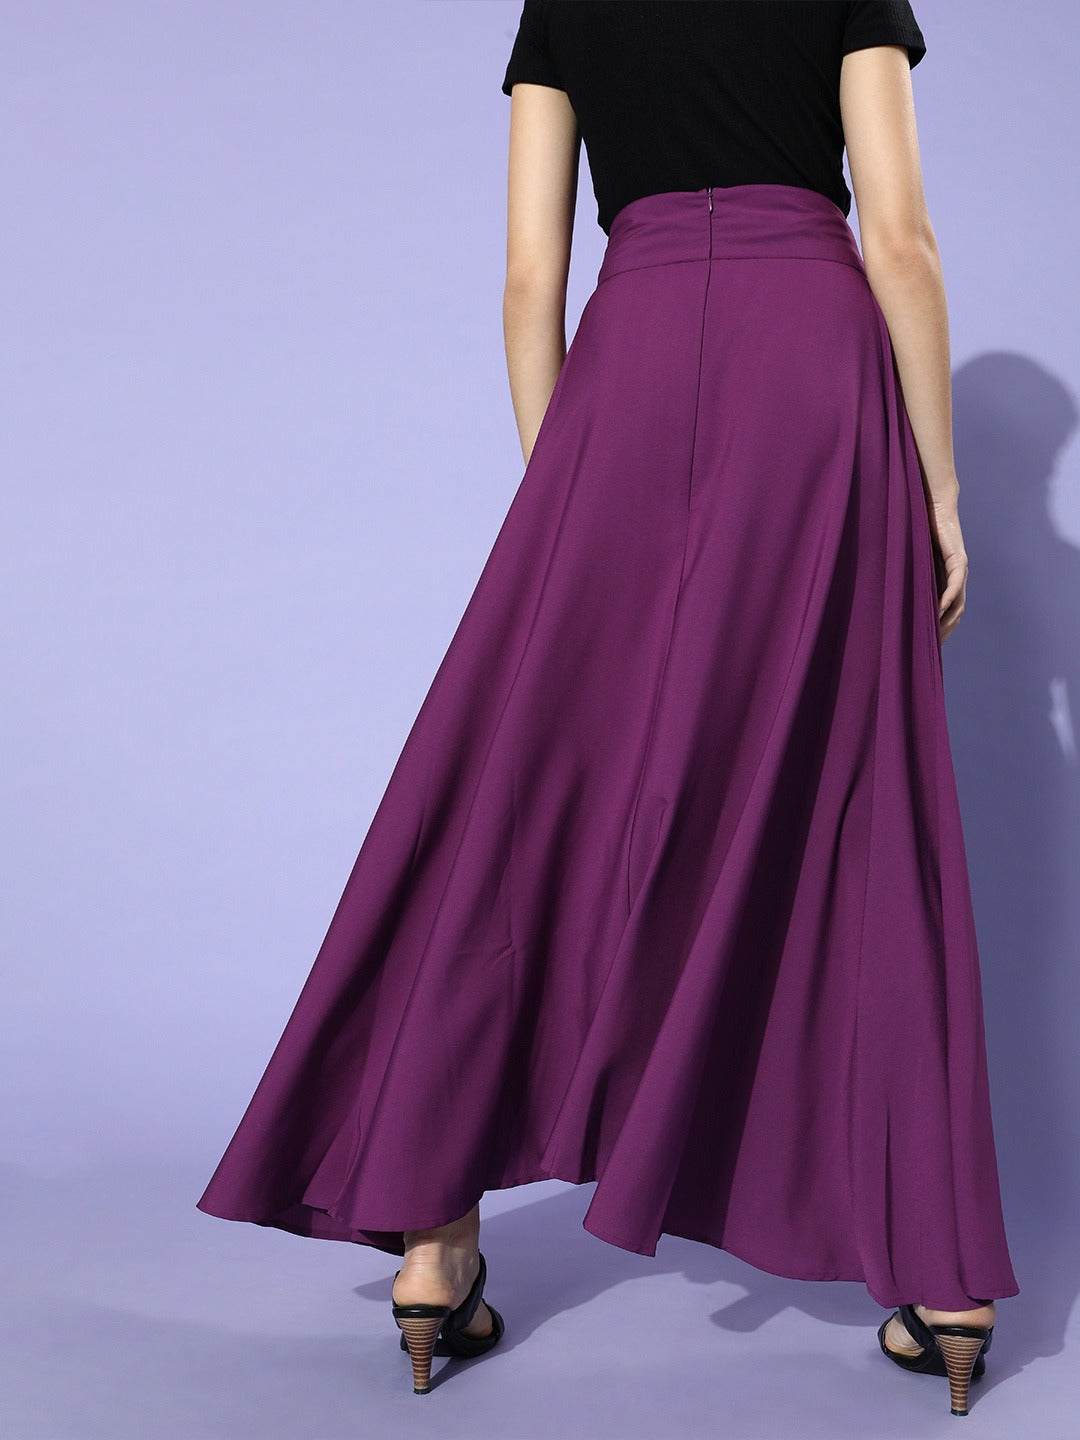 Light Purple Bridesmaid Skirt. Light Purple Maxi Skirt. Long Evening Skirt.  Floor Length Skirt. - Etsy